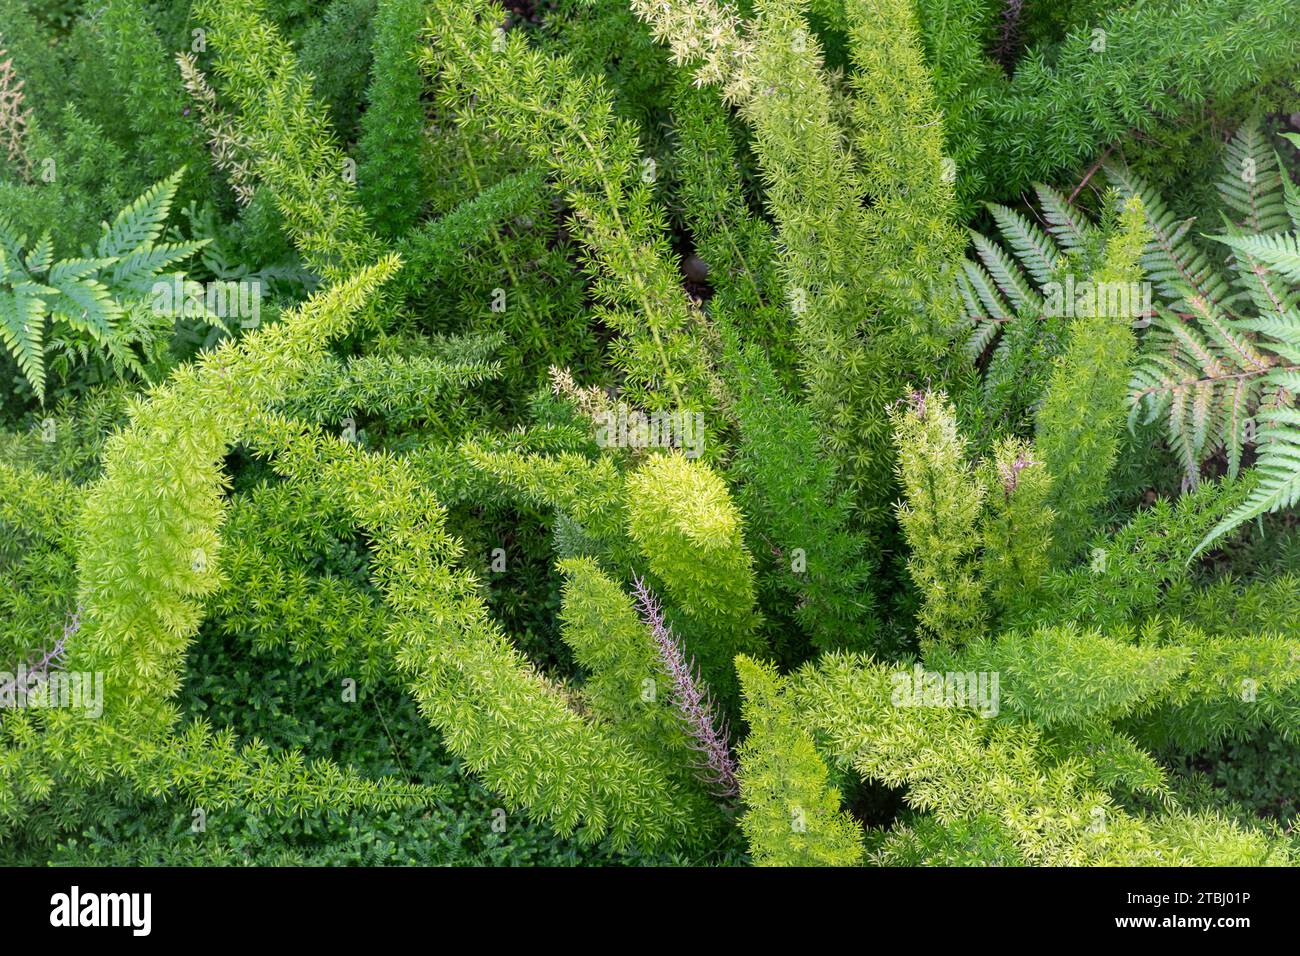 Asperges densiflorus 'Myersii' (Plume Asparagus) plantes vues d'en haut, une plante vivace ornementale à feuilles persistantes au feuillage ressemblant à un panache Banque D'Images